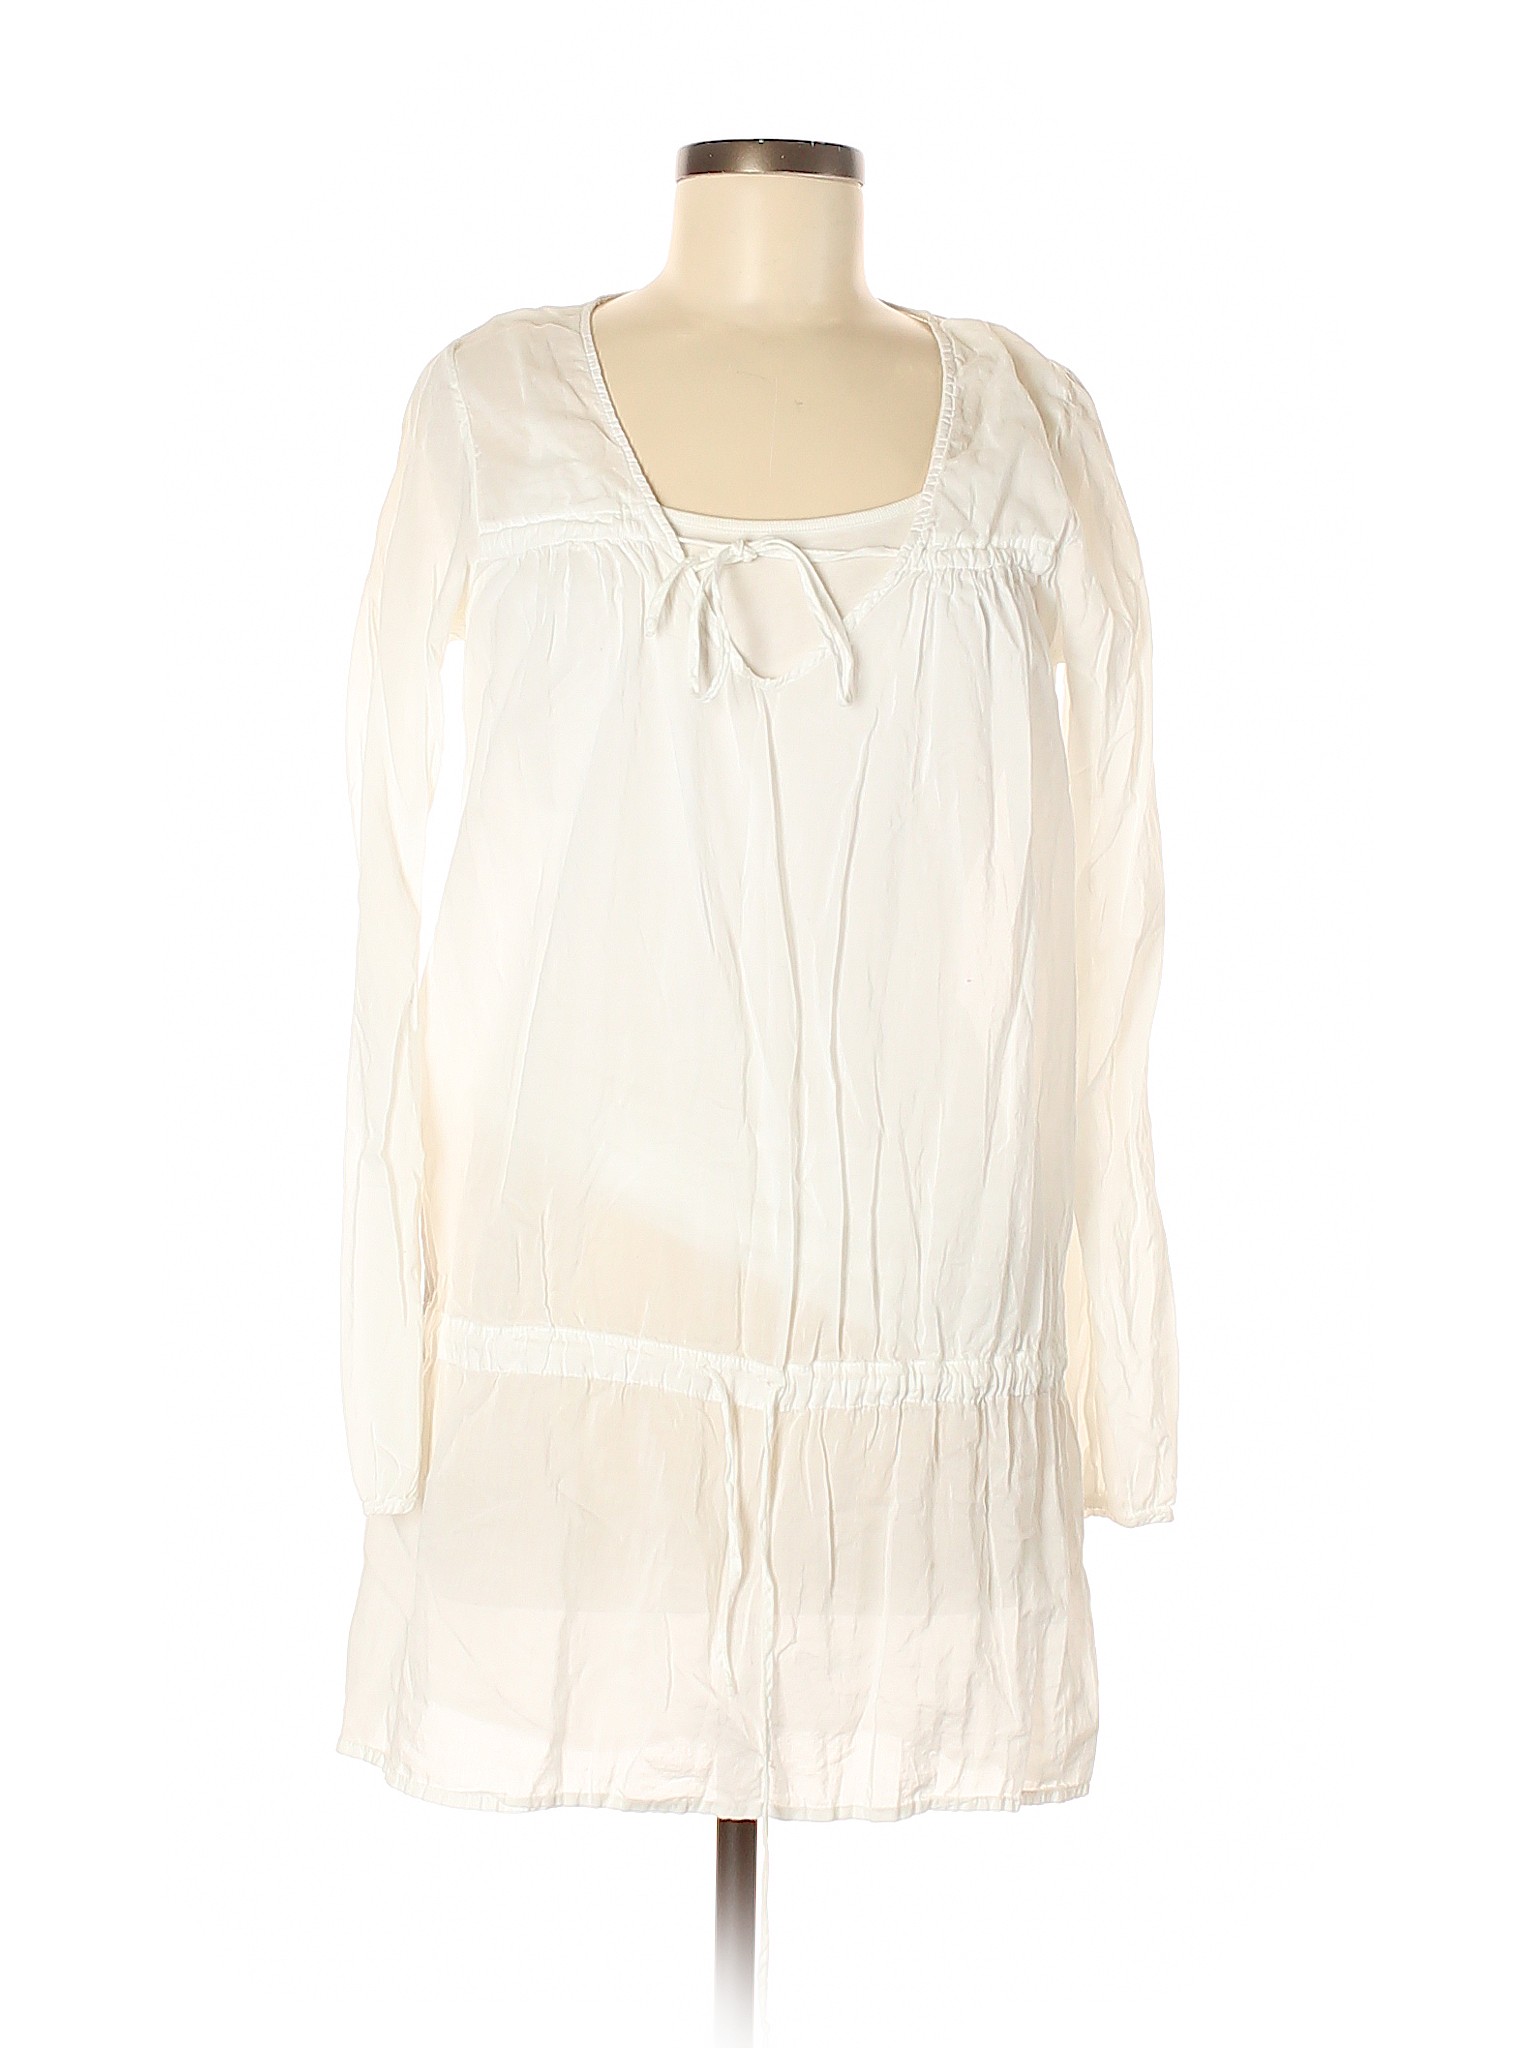 Velvet Women White Long Sleeve Blouse M | eBay